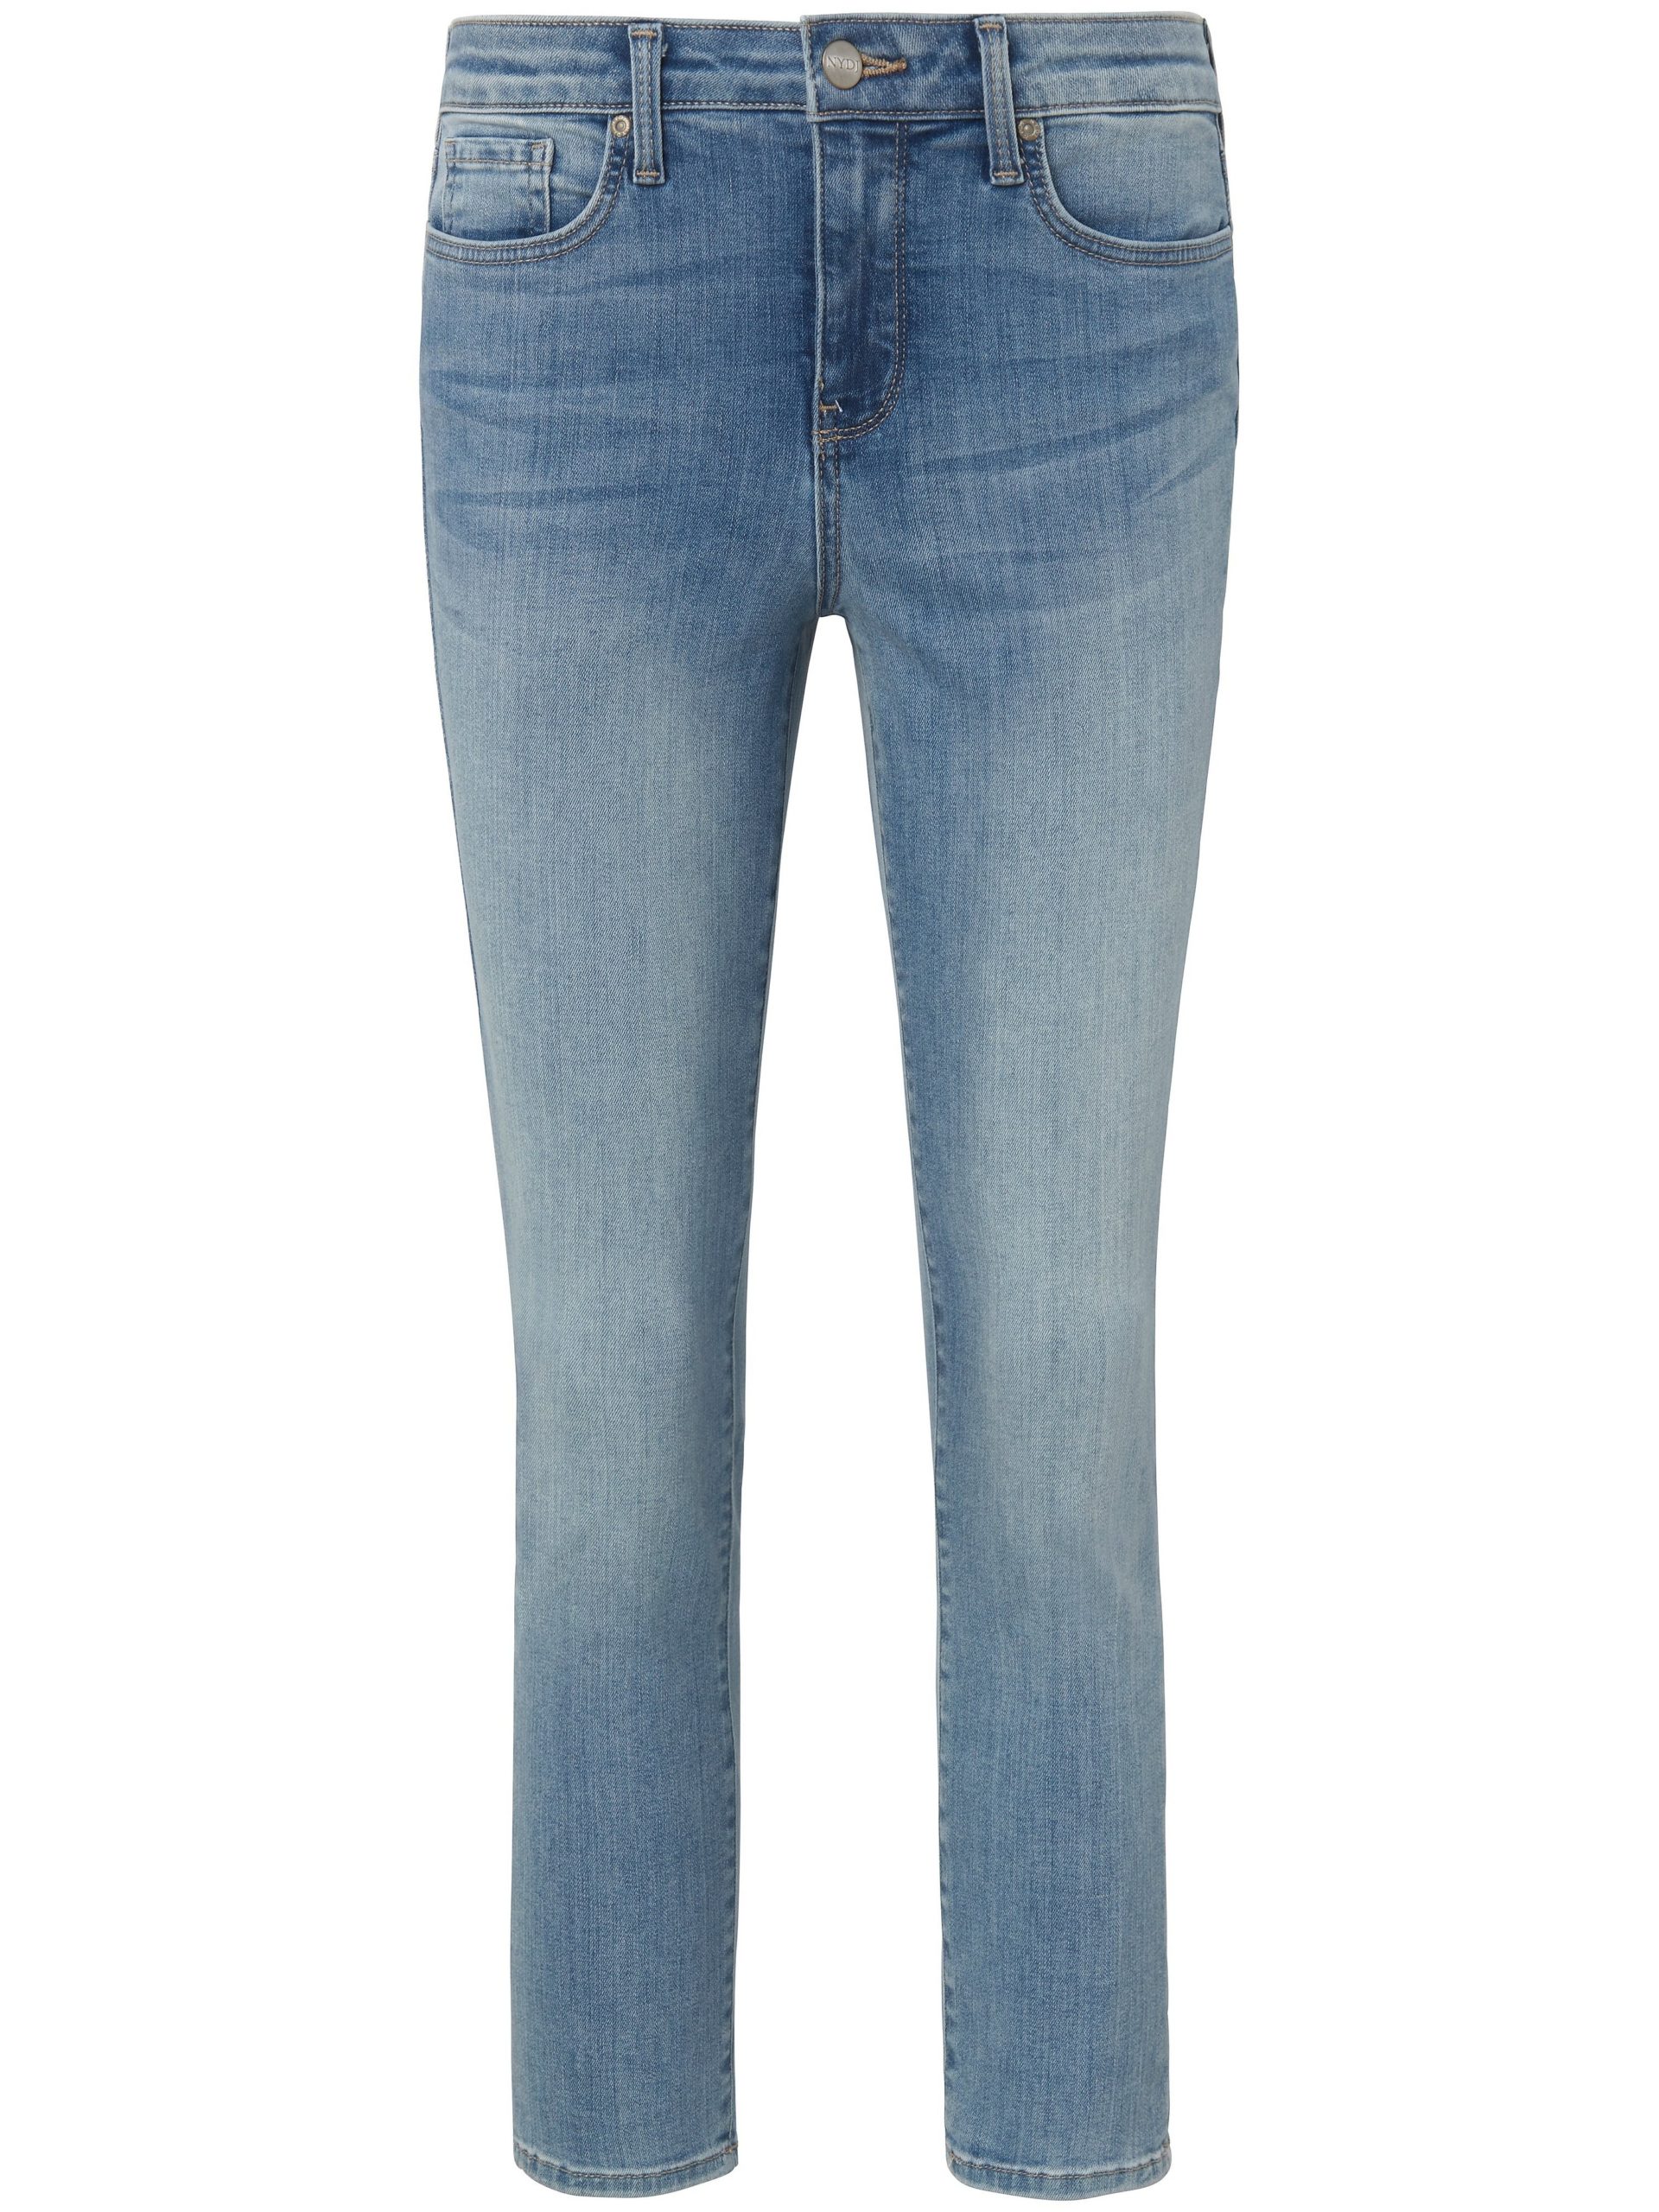 Jeans model Alina Ankle met smalle pijpen Van NYDJ denim Kopen